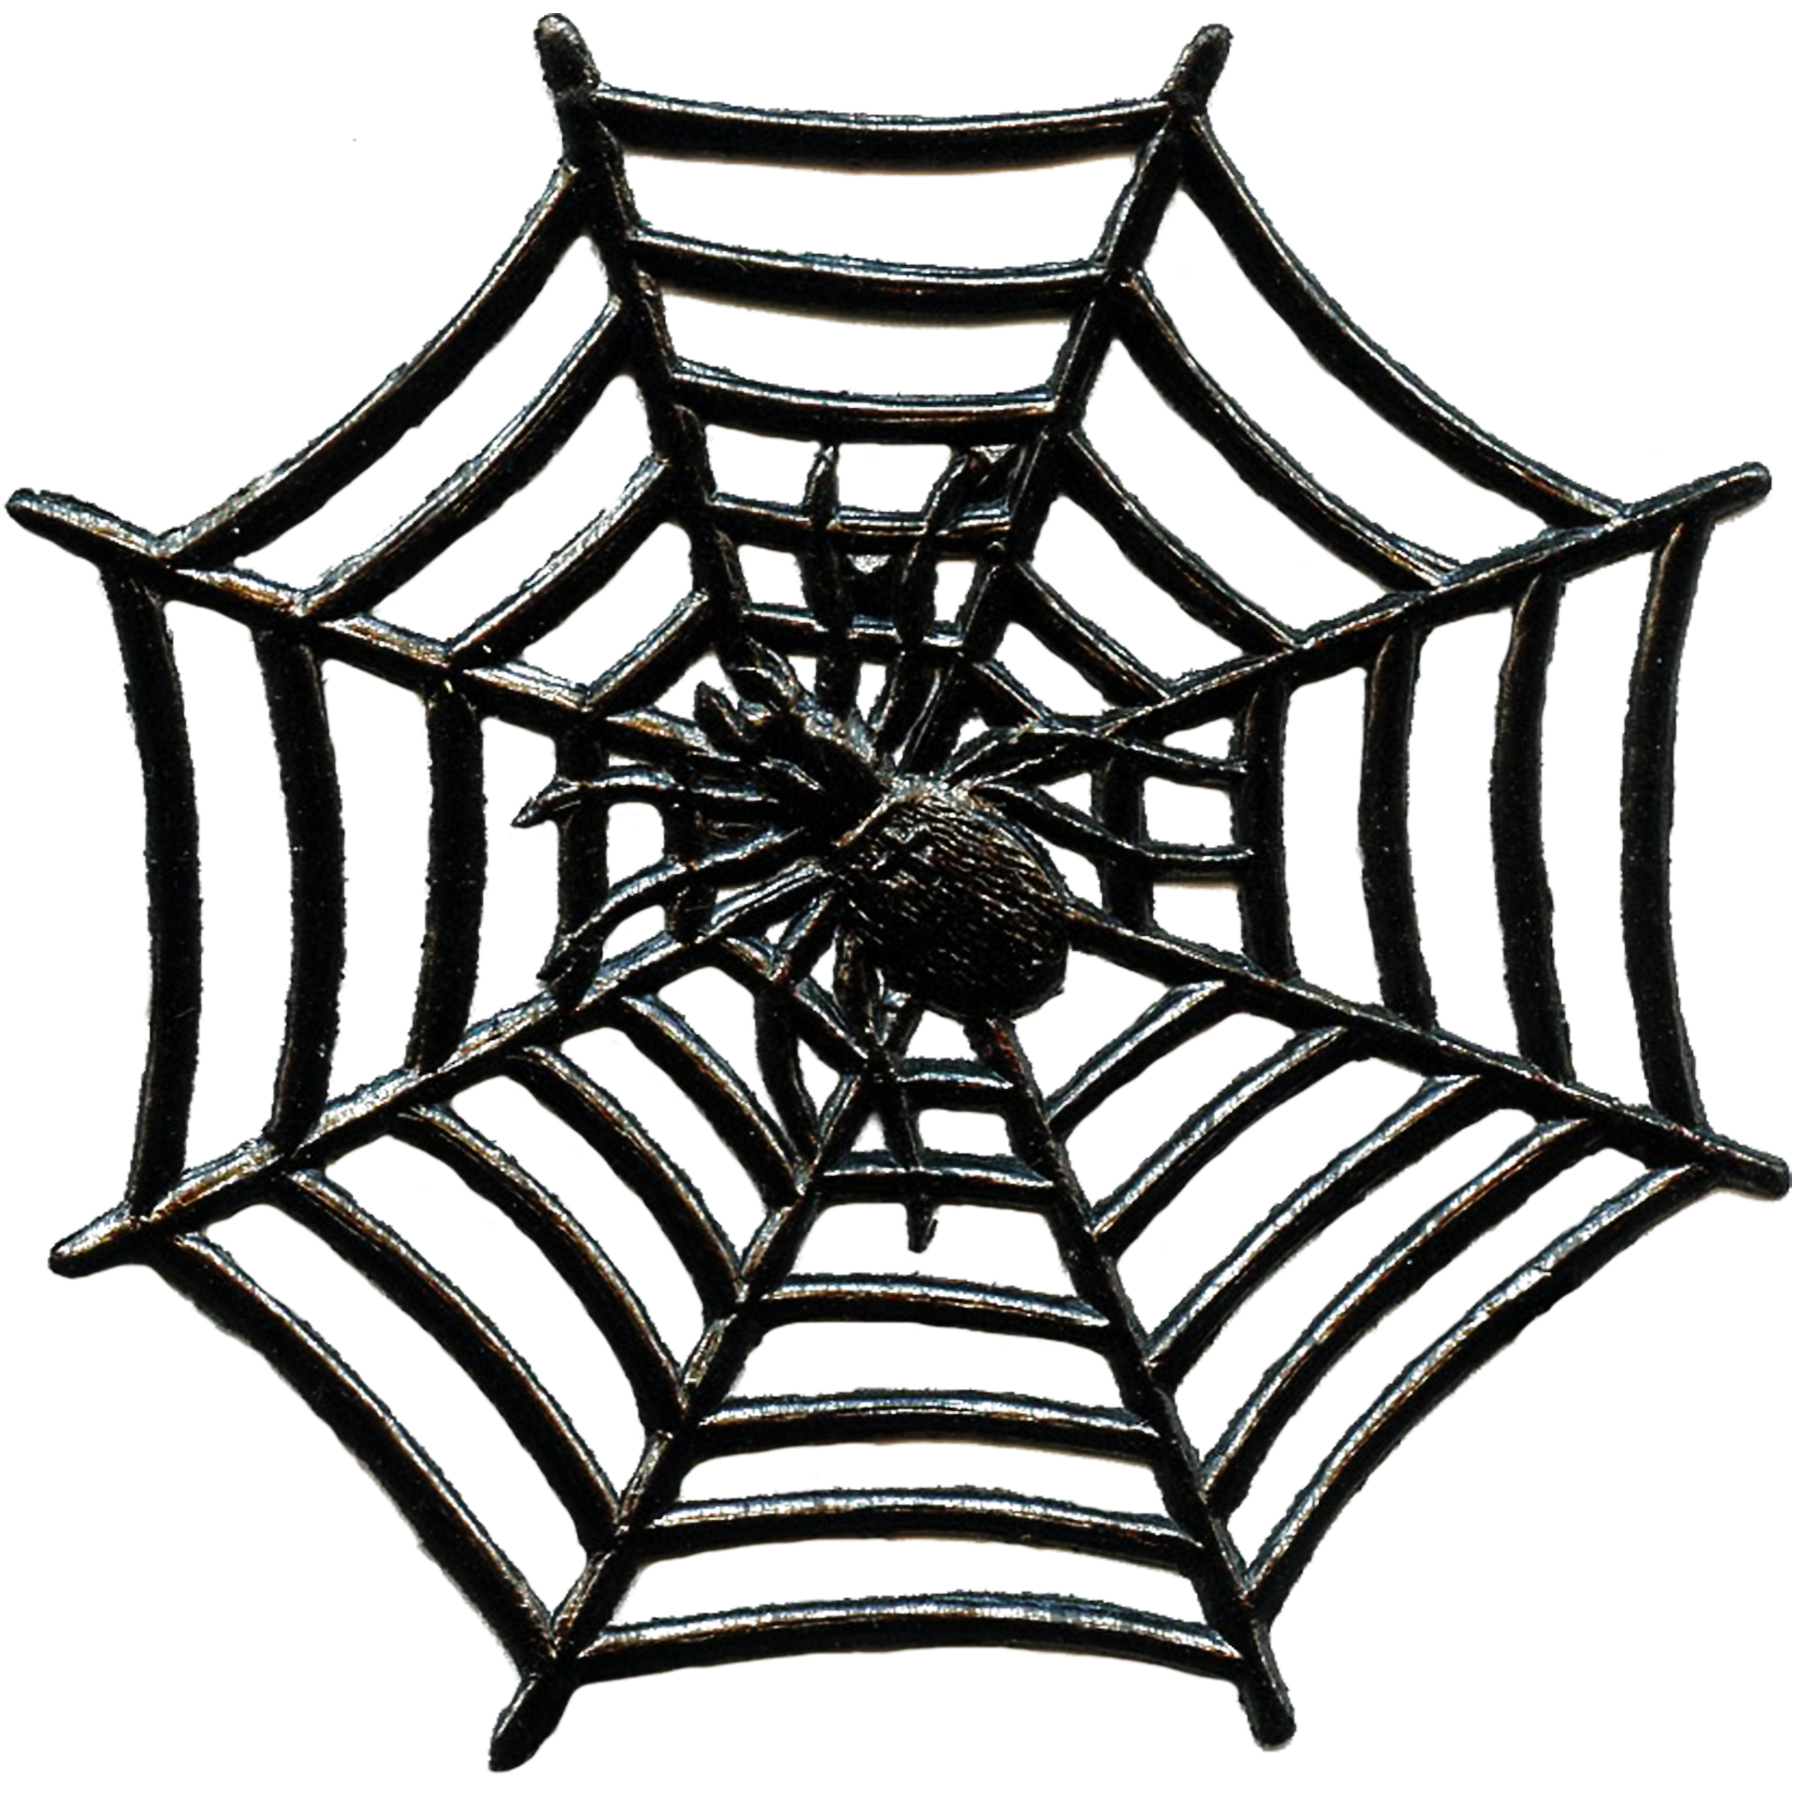 spider net clipart - photo #46